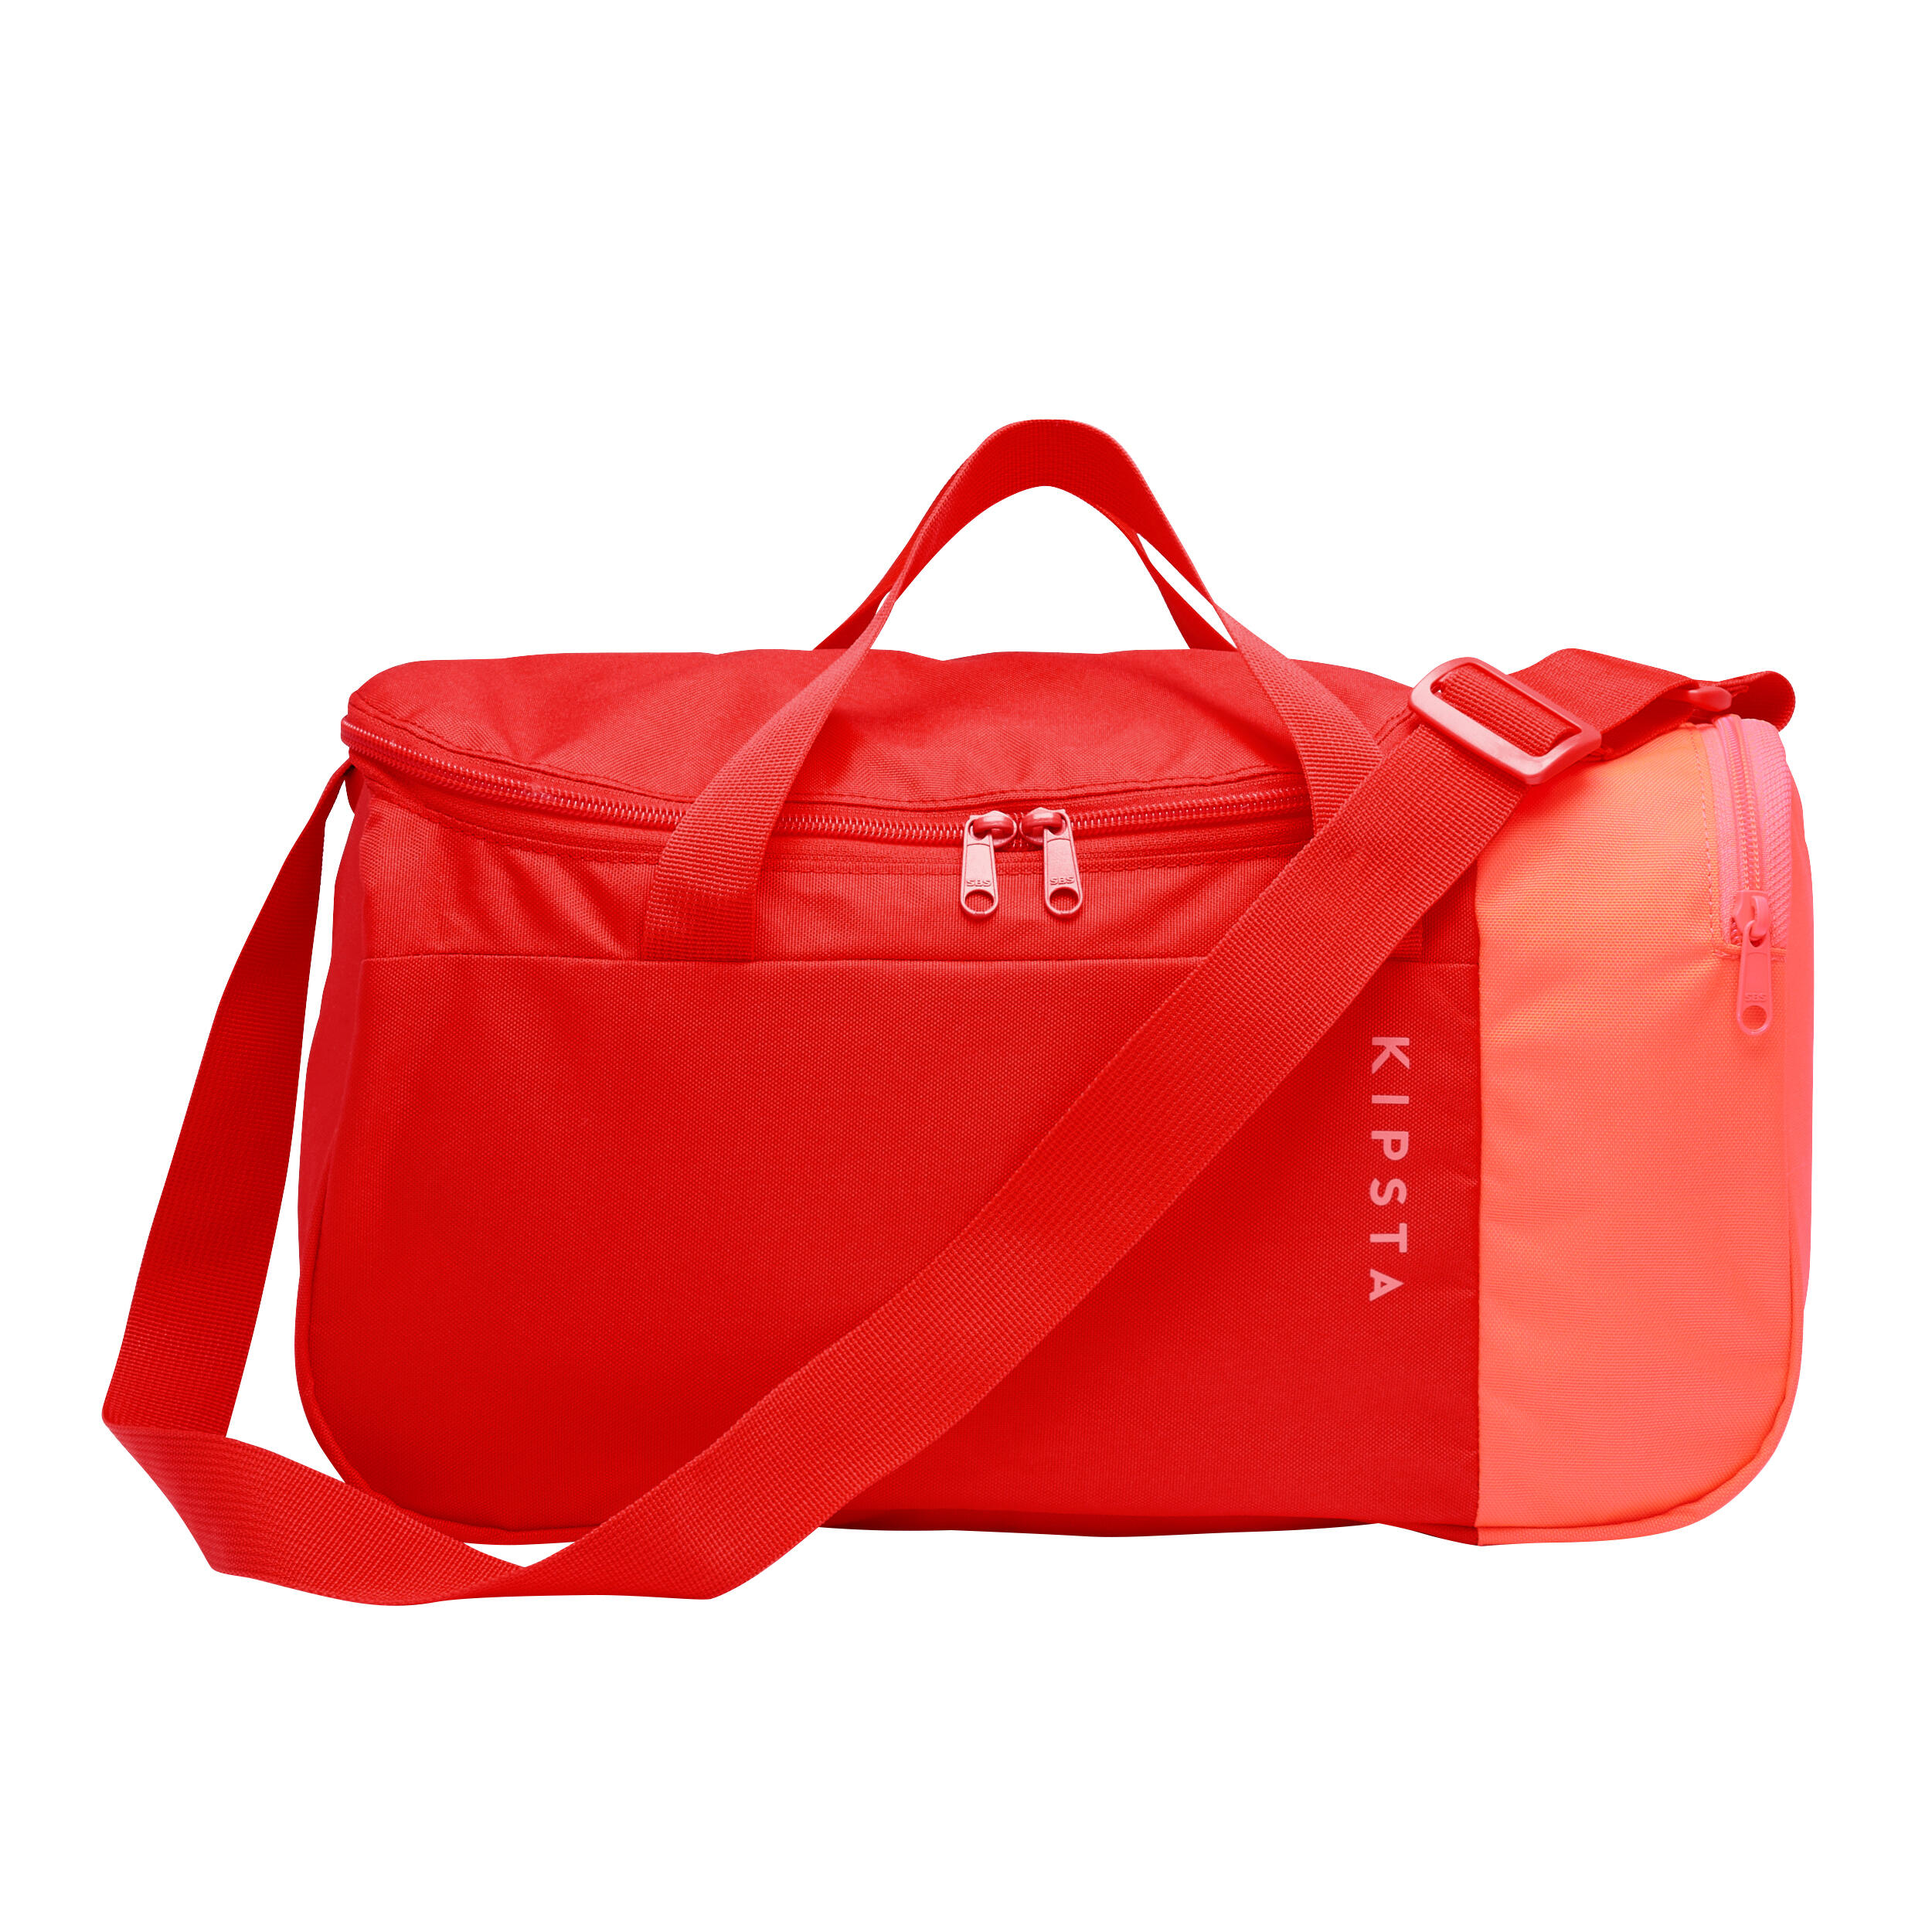 Sports Bag Essential 20L - Pink 8/8